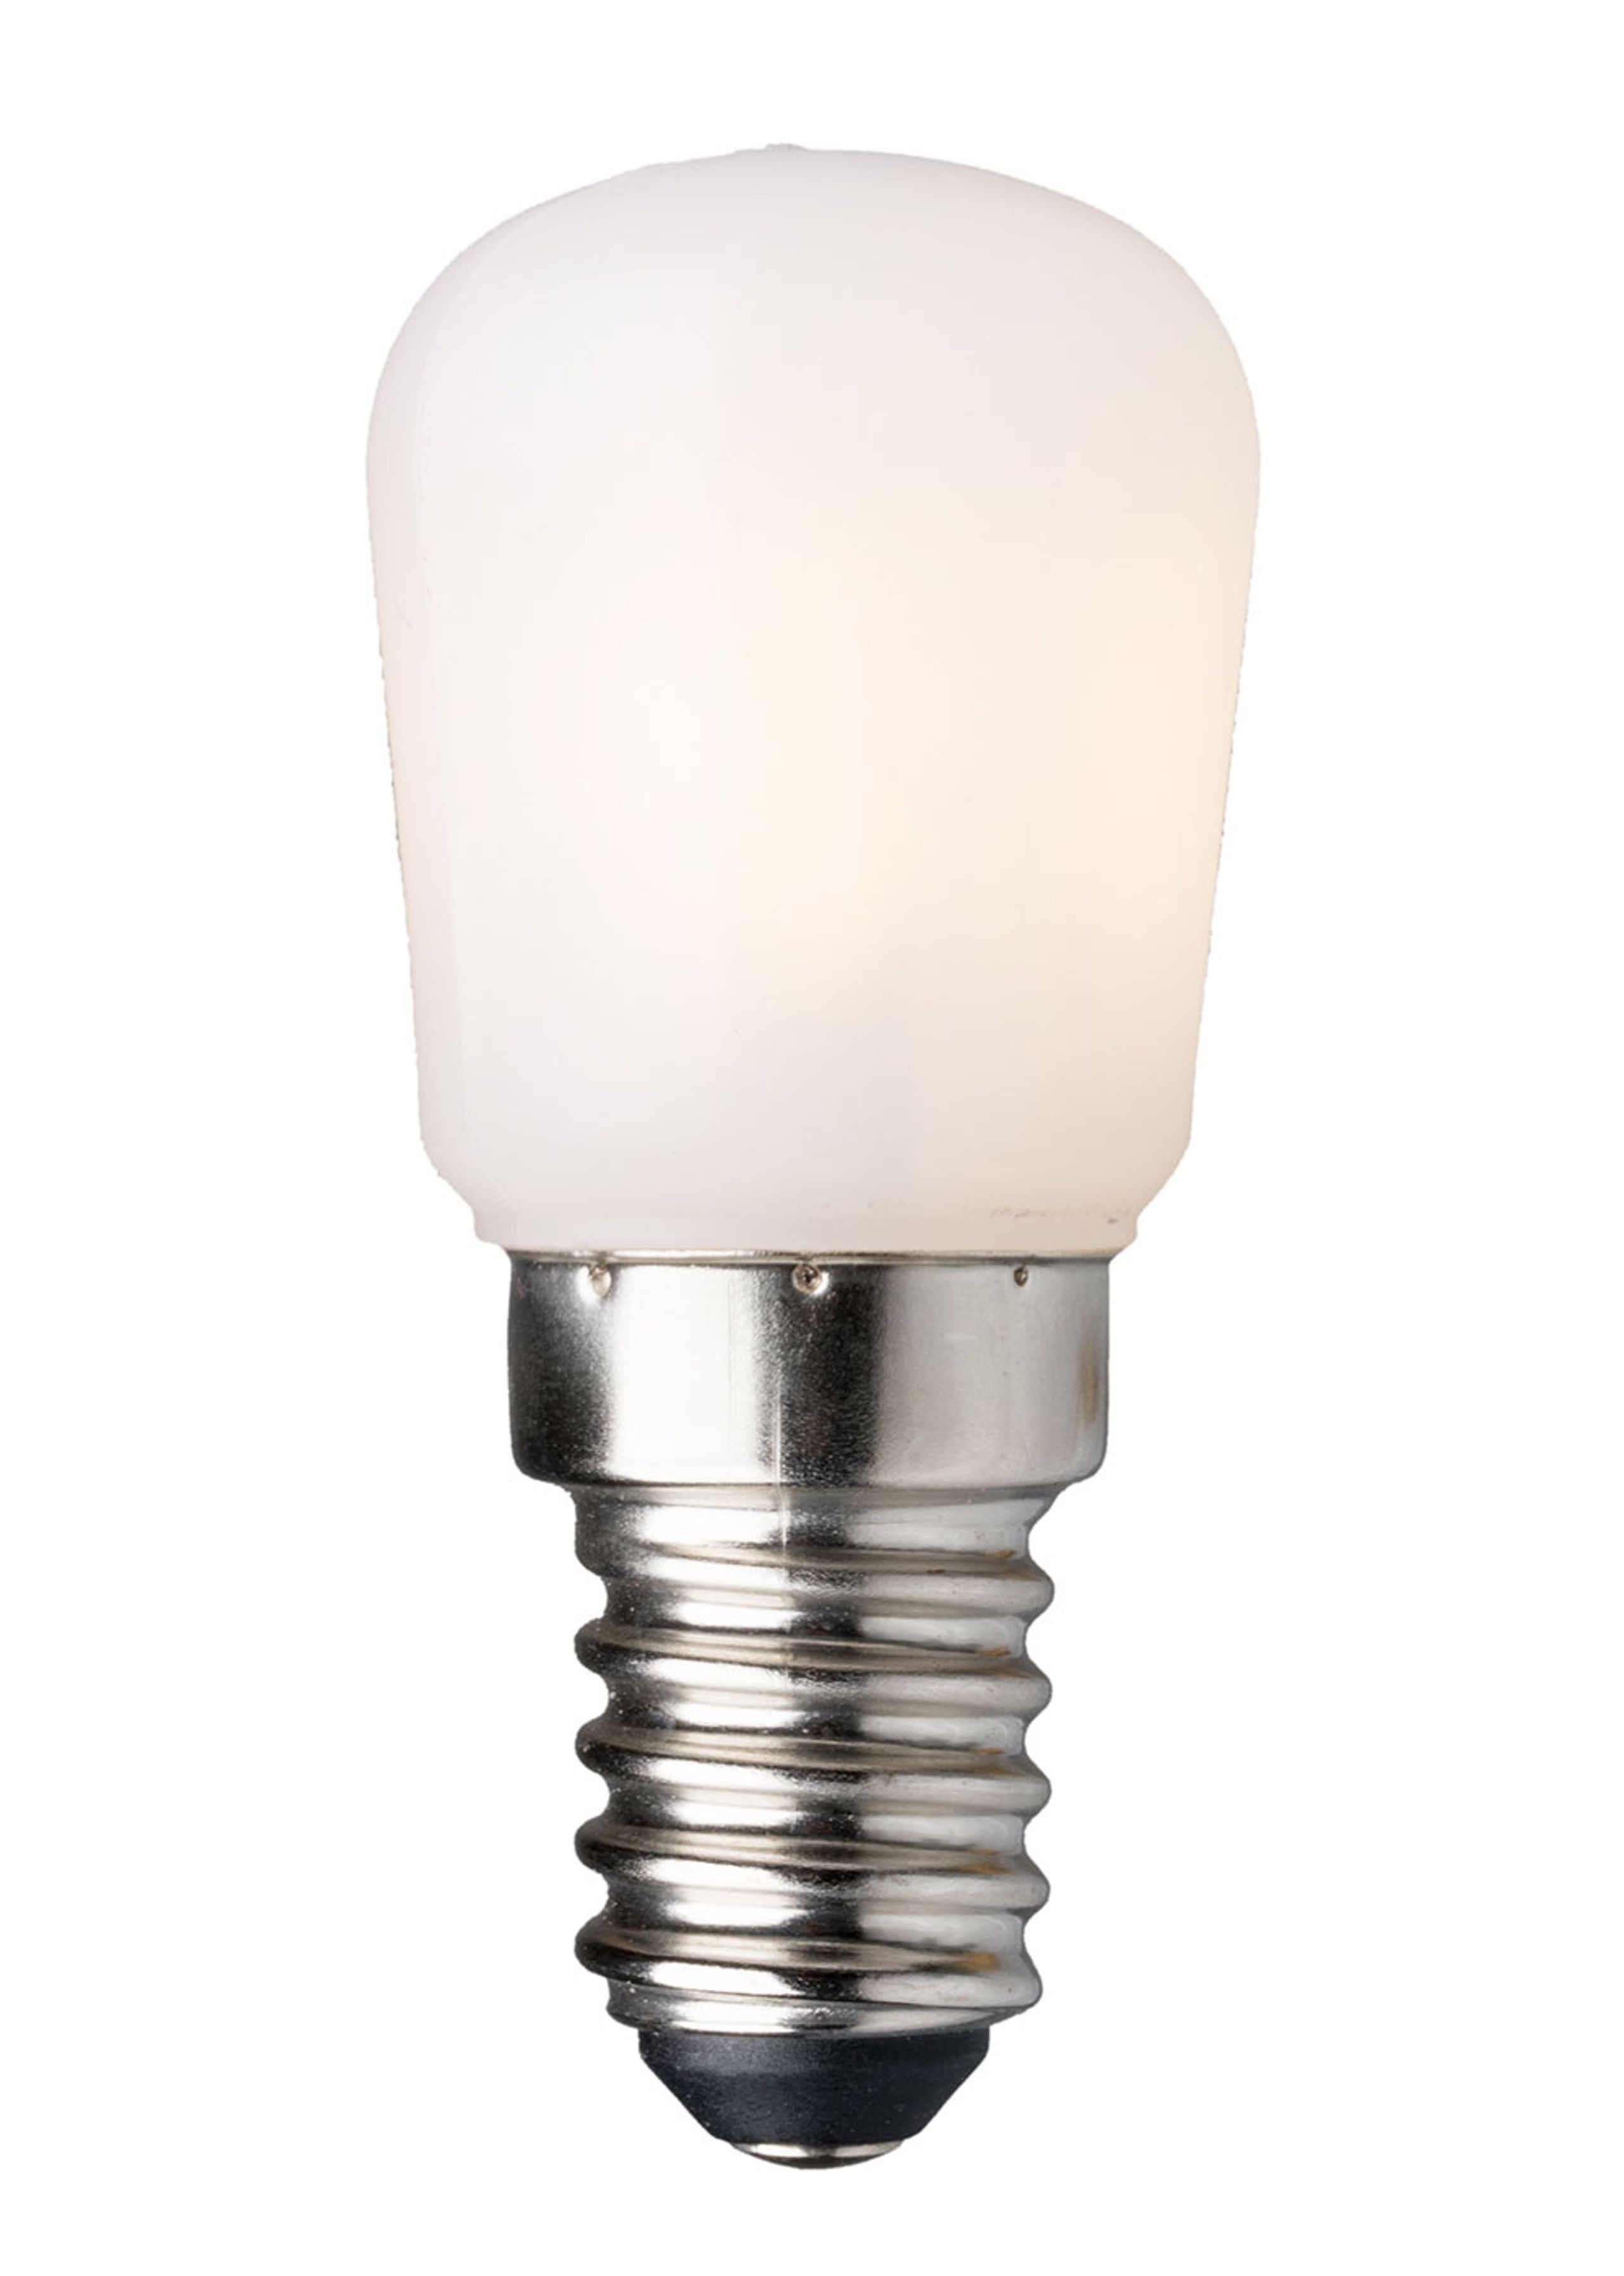 Lampadine LED E14, Acquista online Offerta